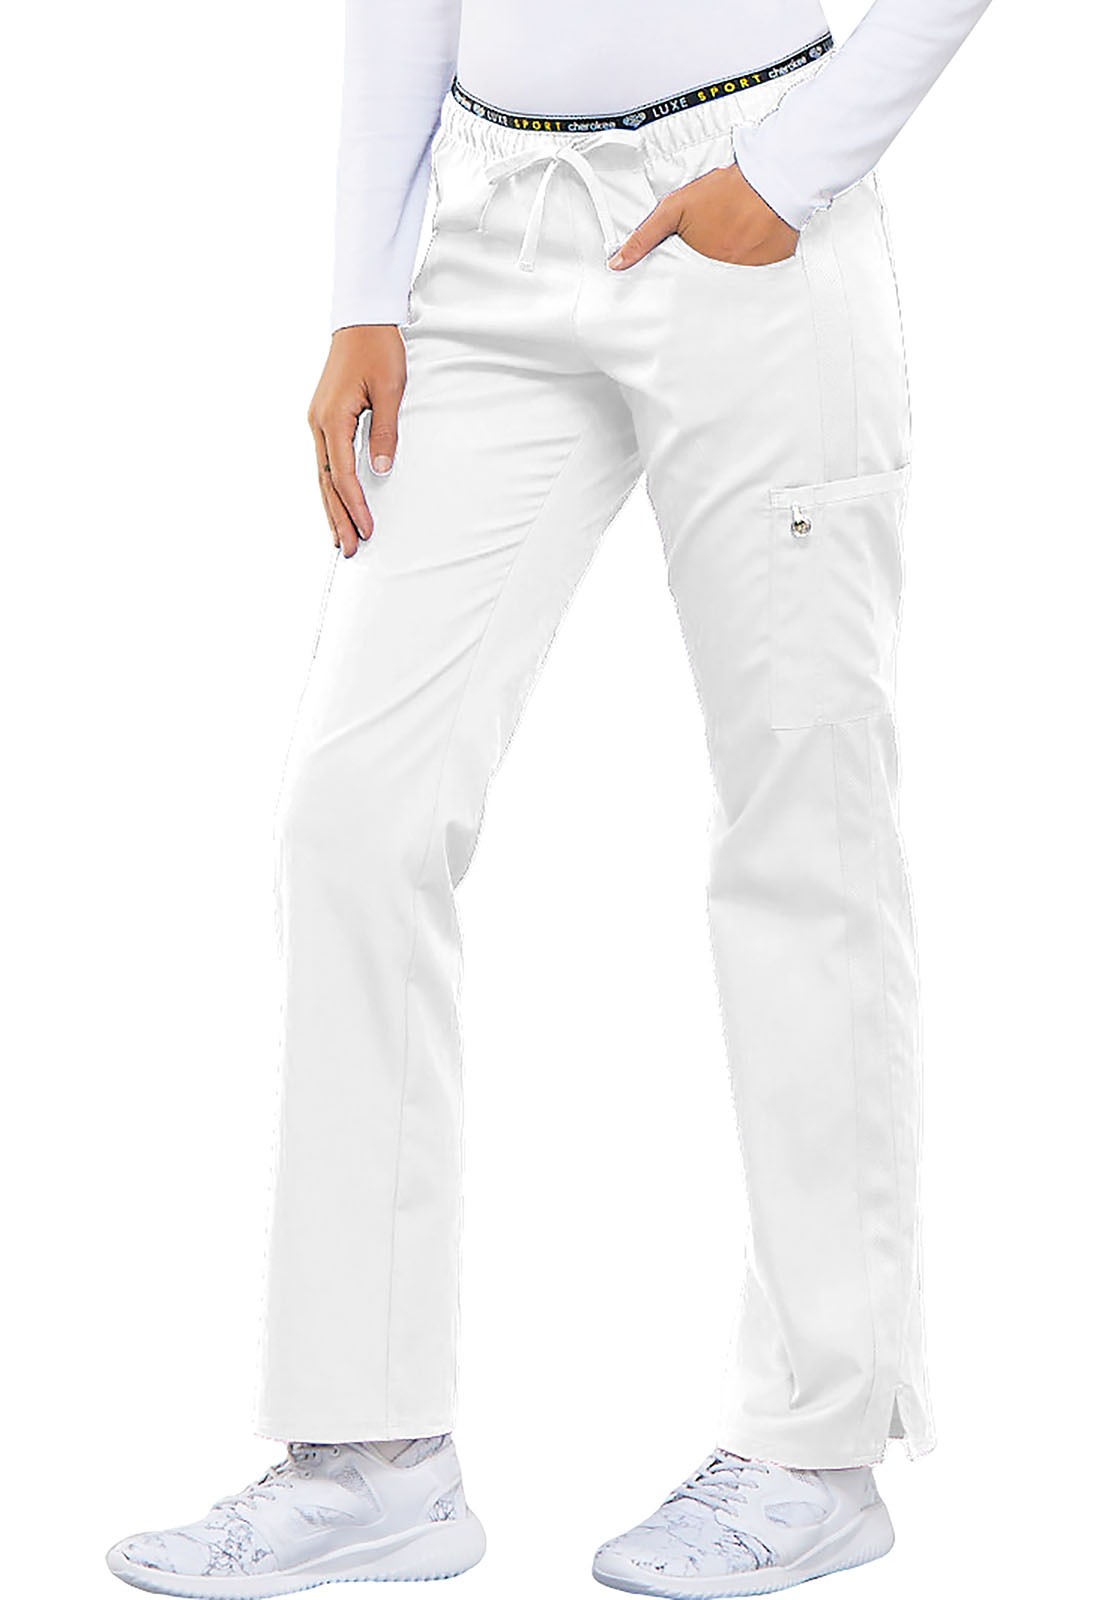  MDC Jet Luxe - Pantalón de esquí (mujer), blanco, 6 : Ropa,  Zapatos y Joyería